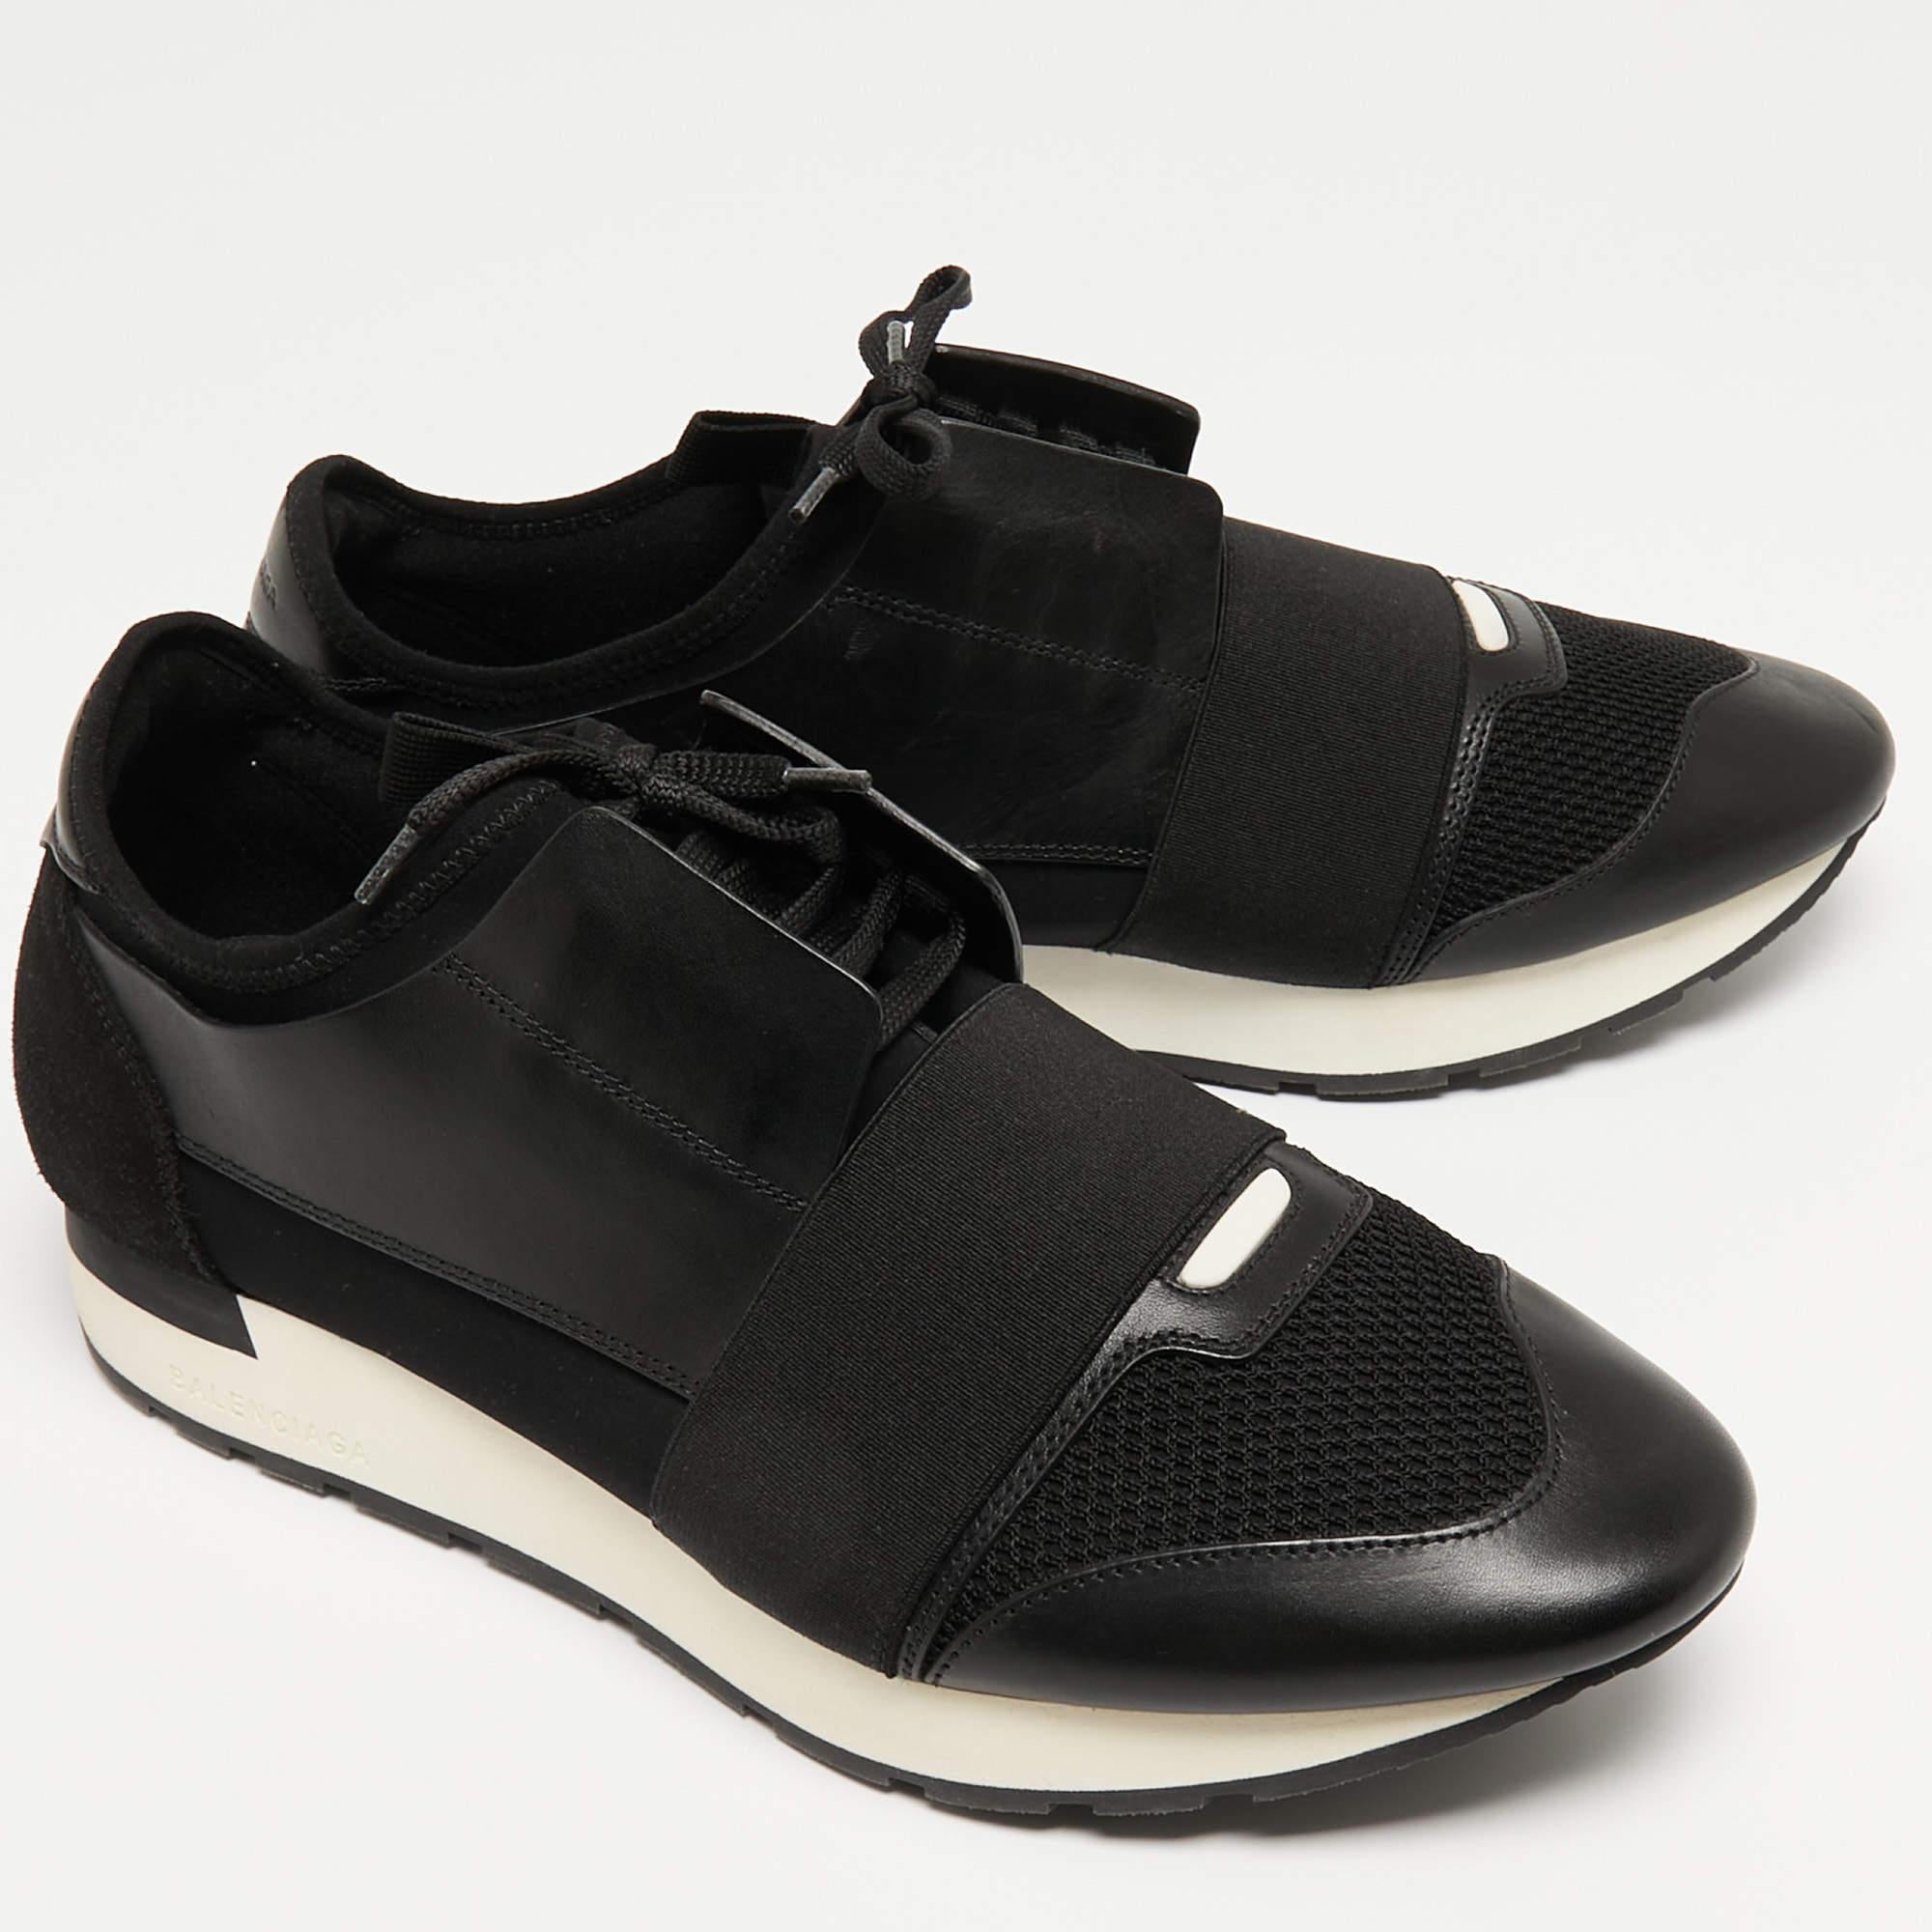 Die Race Runners Sneakers von Balenciaga sind Ihr neuester Schuh. Diese schwarzen Sneakers wurden aus Leder und Stoff gefertigt und zeichnen sich durch eine schicke Silhouette aus. Sie haben eine überzogene Zehenpartie, Riemchendetails auf dem